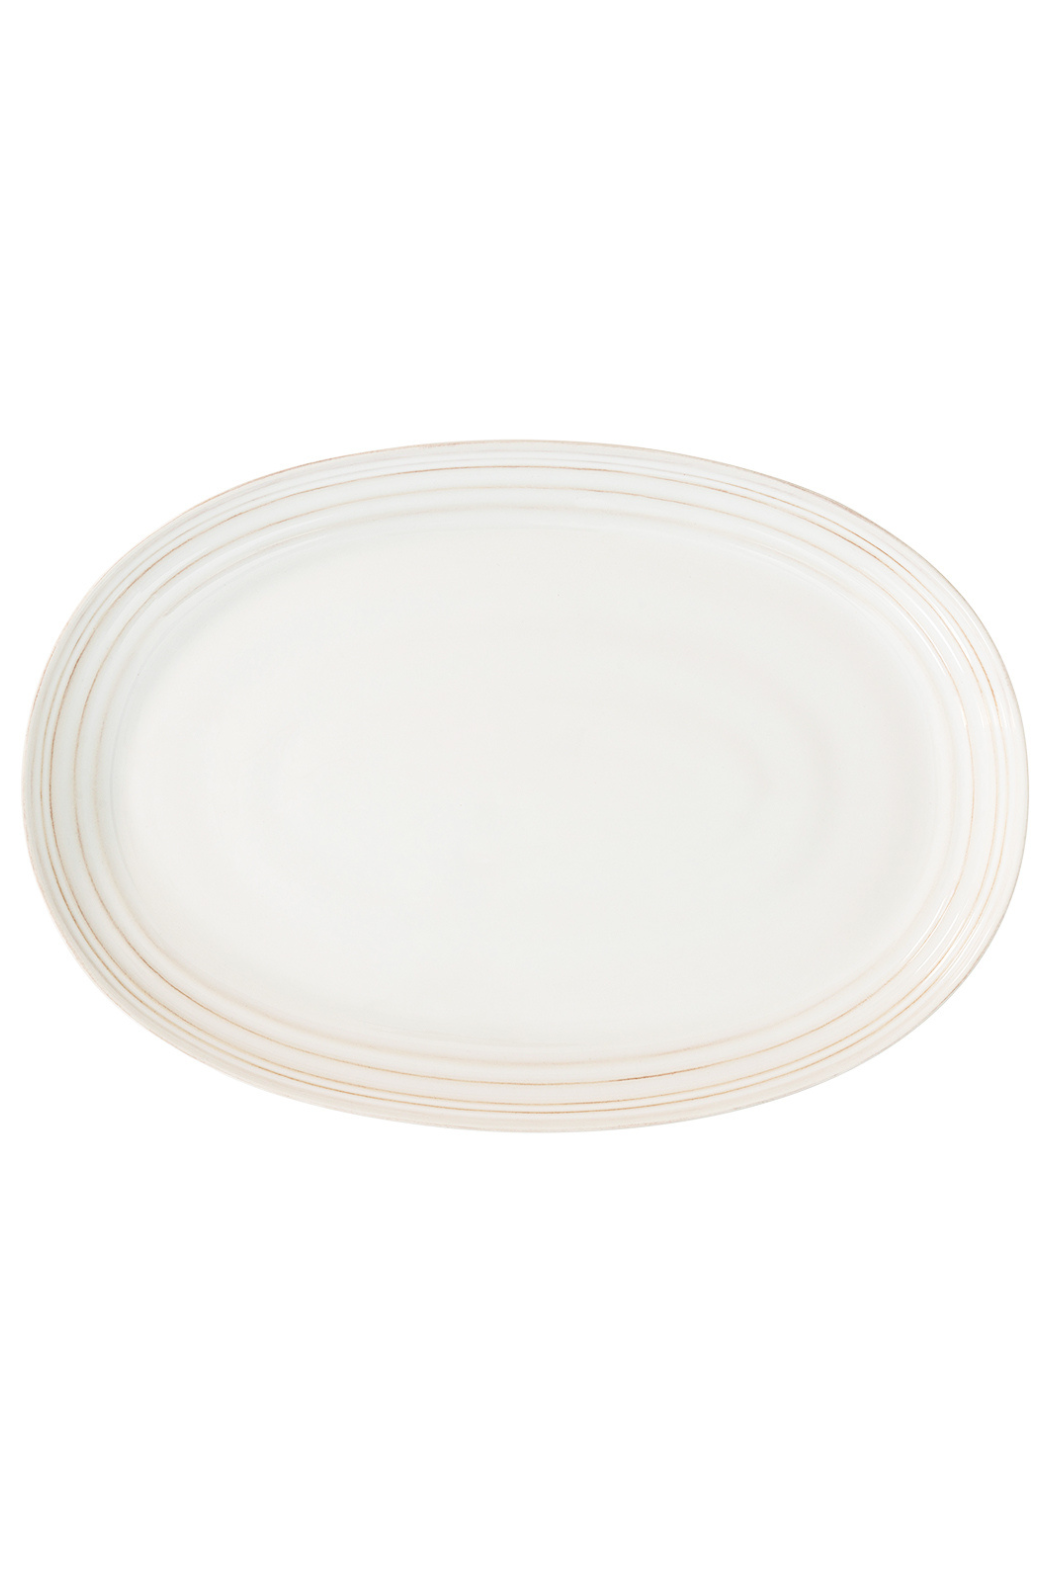 Juliska Bilbao Whitewash Platter For Madeline & Adam